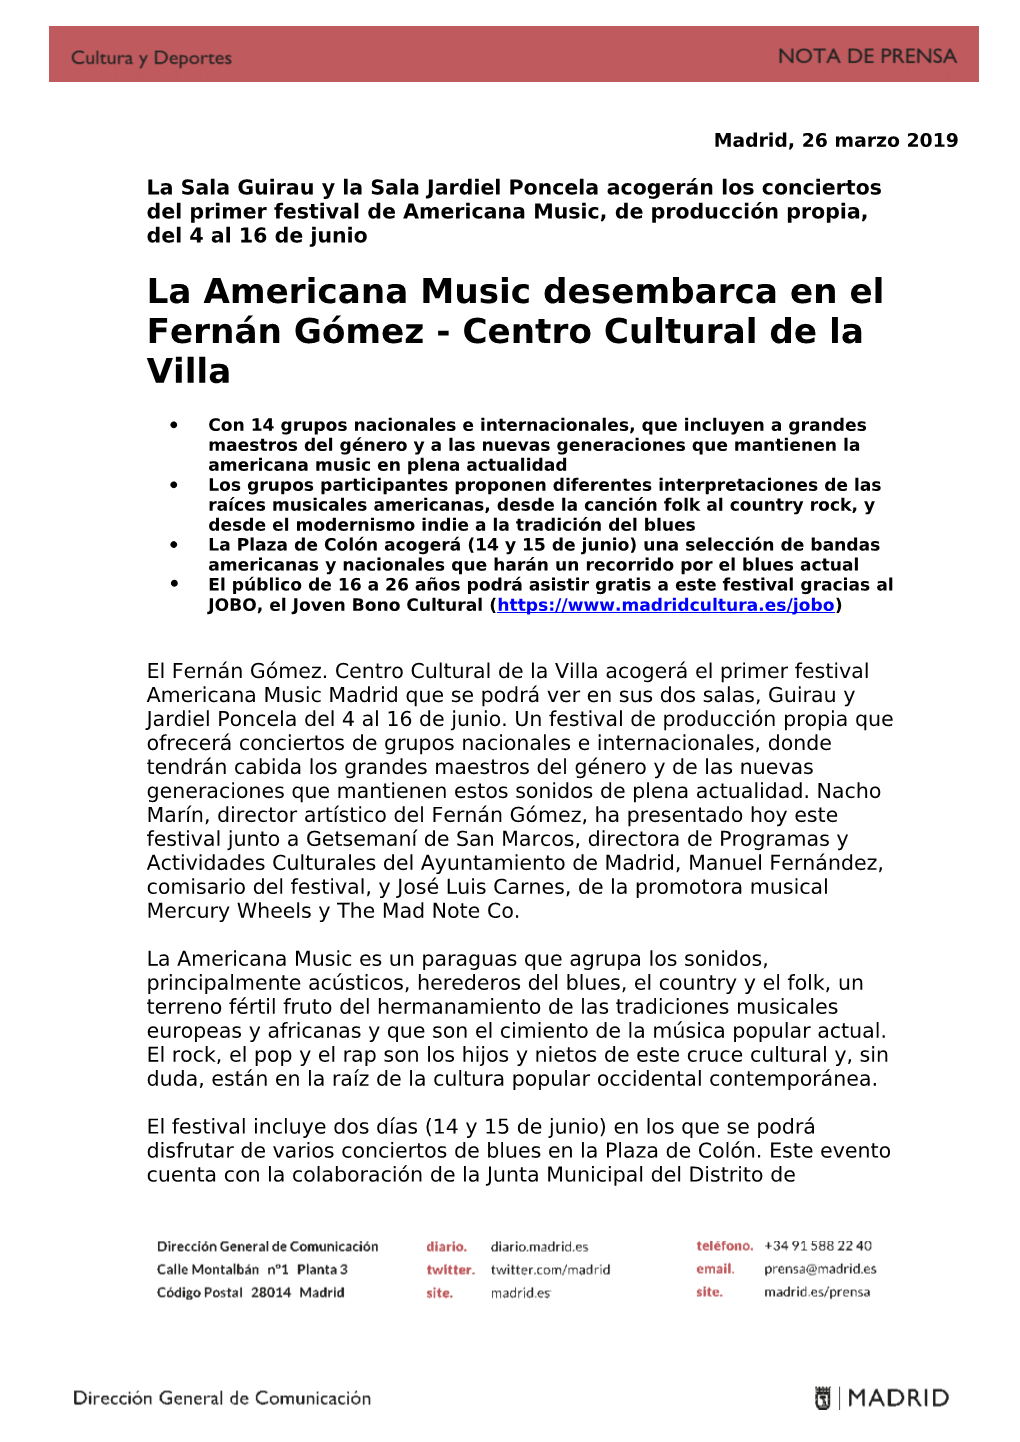 La Americana Music Desembarca En El Fernán Gómez - Centro Cultural De La Villa